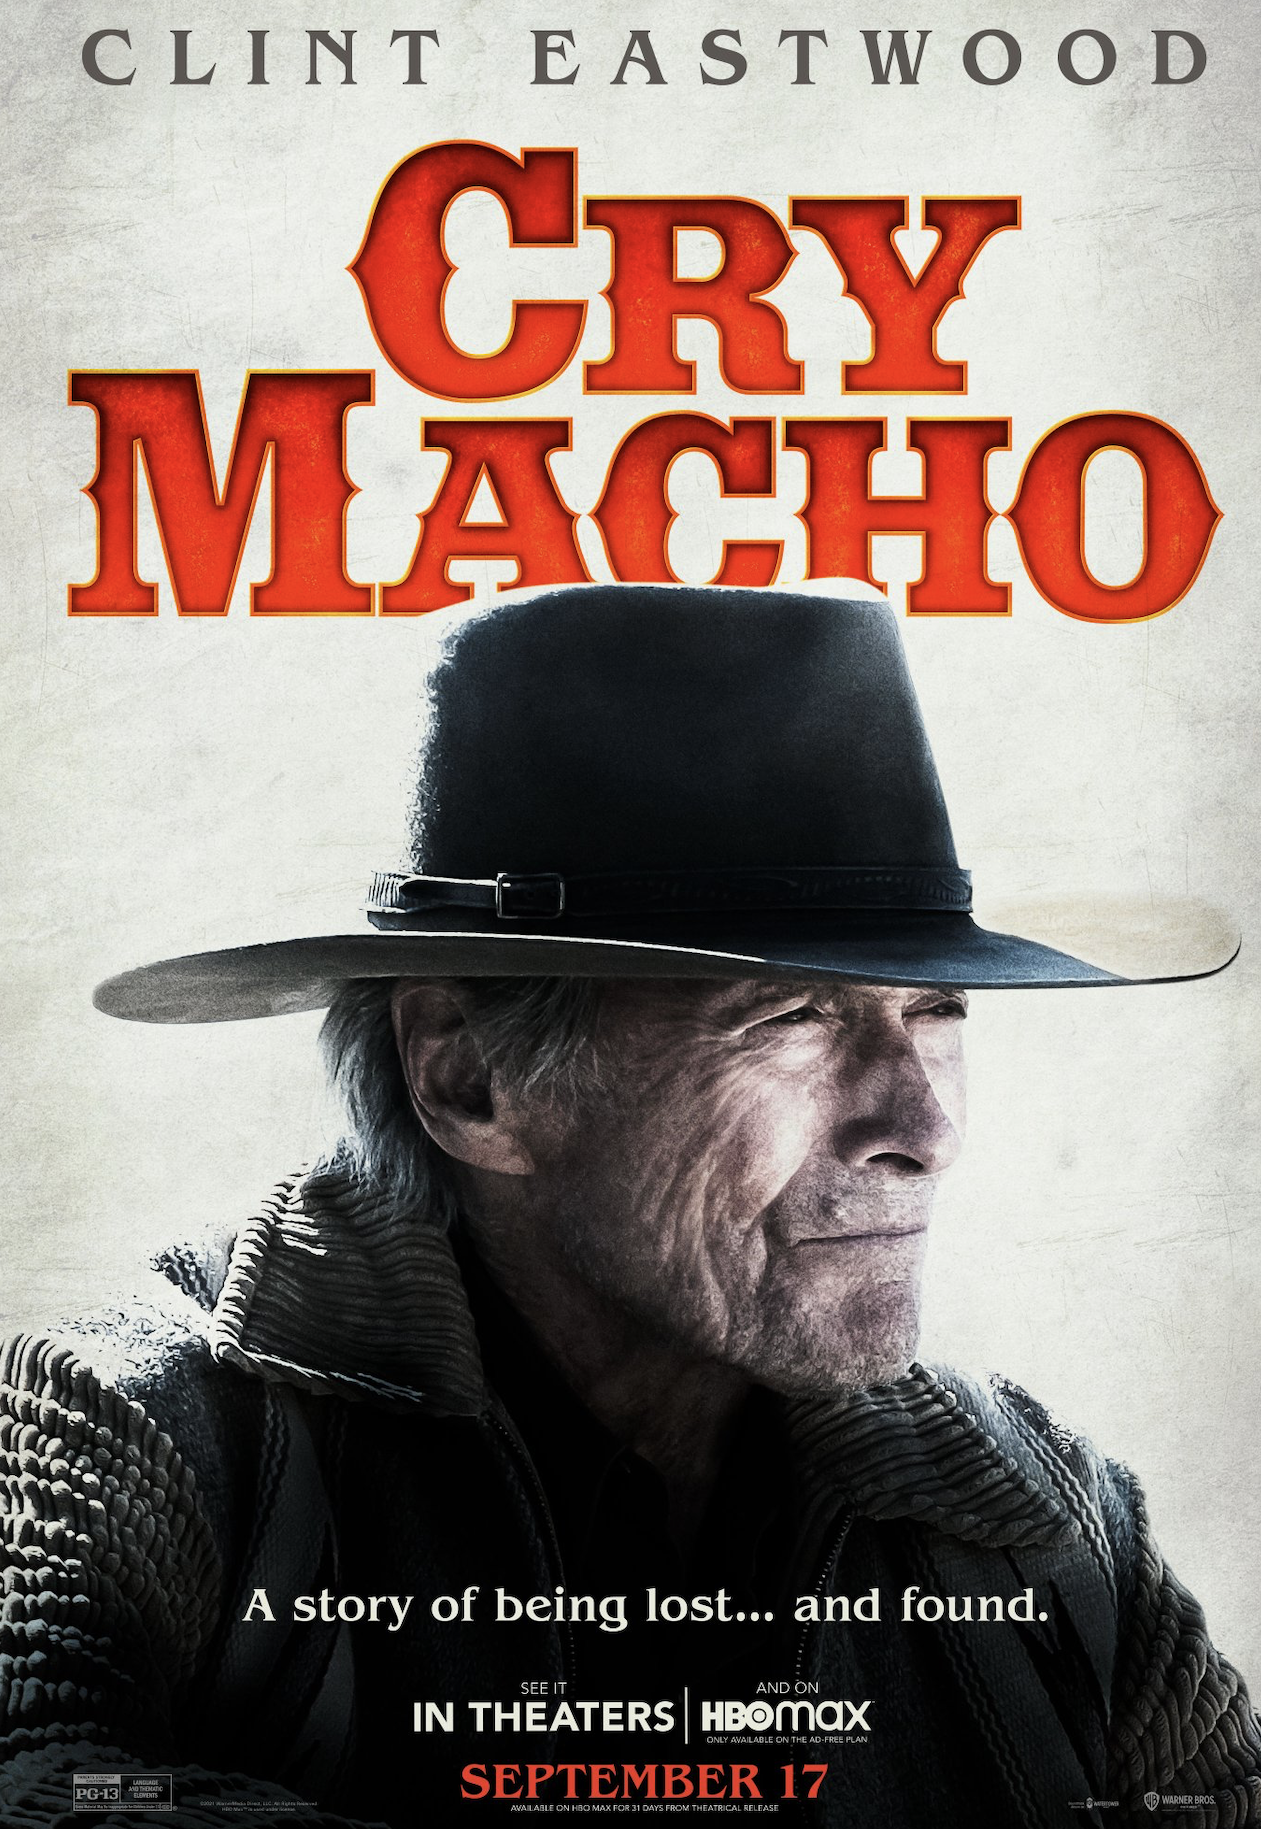 Cartel de la pelcula 'Cry Macho'